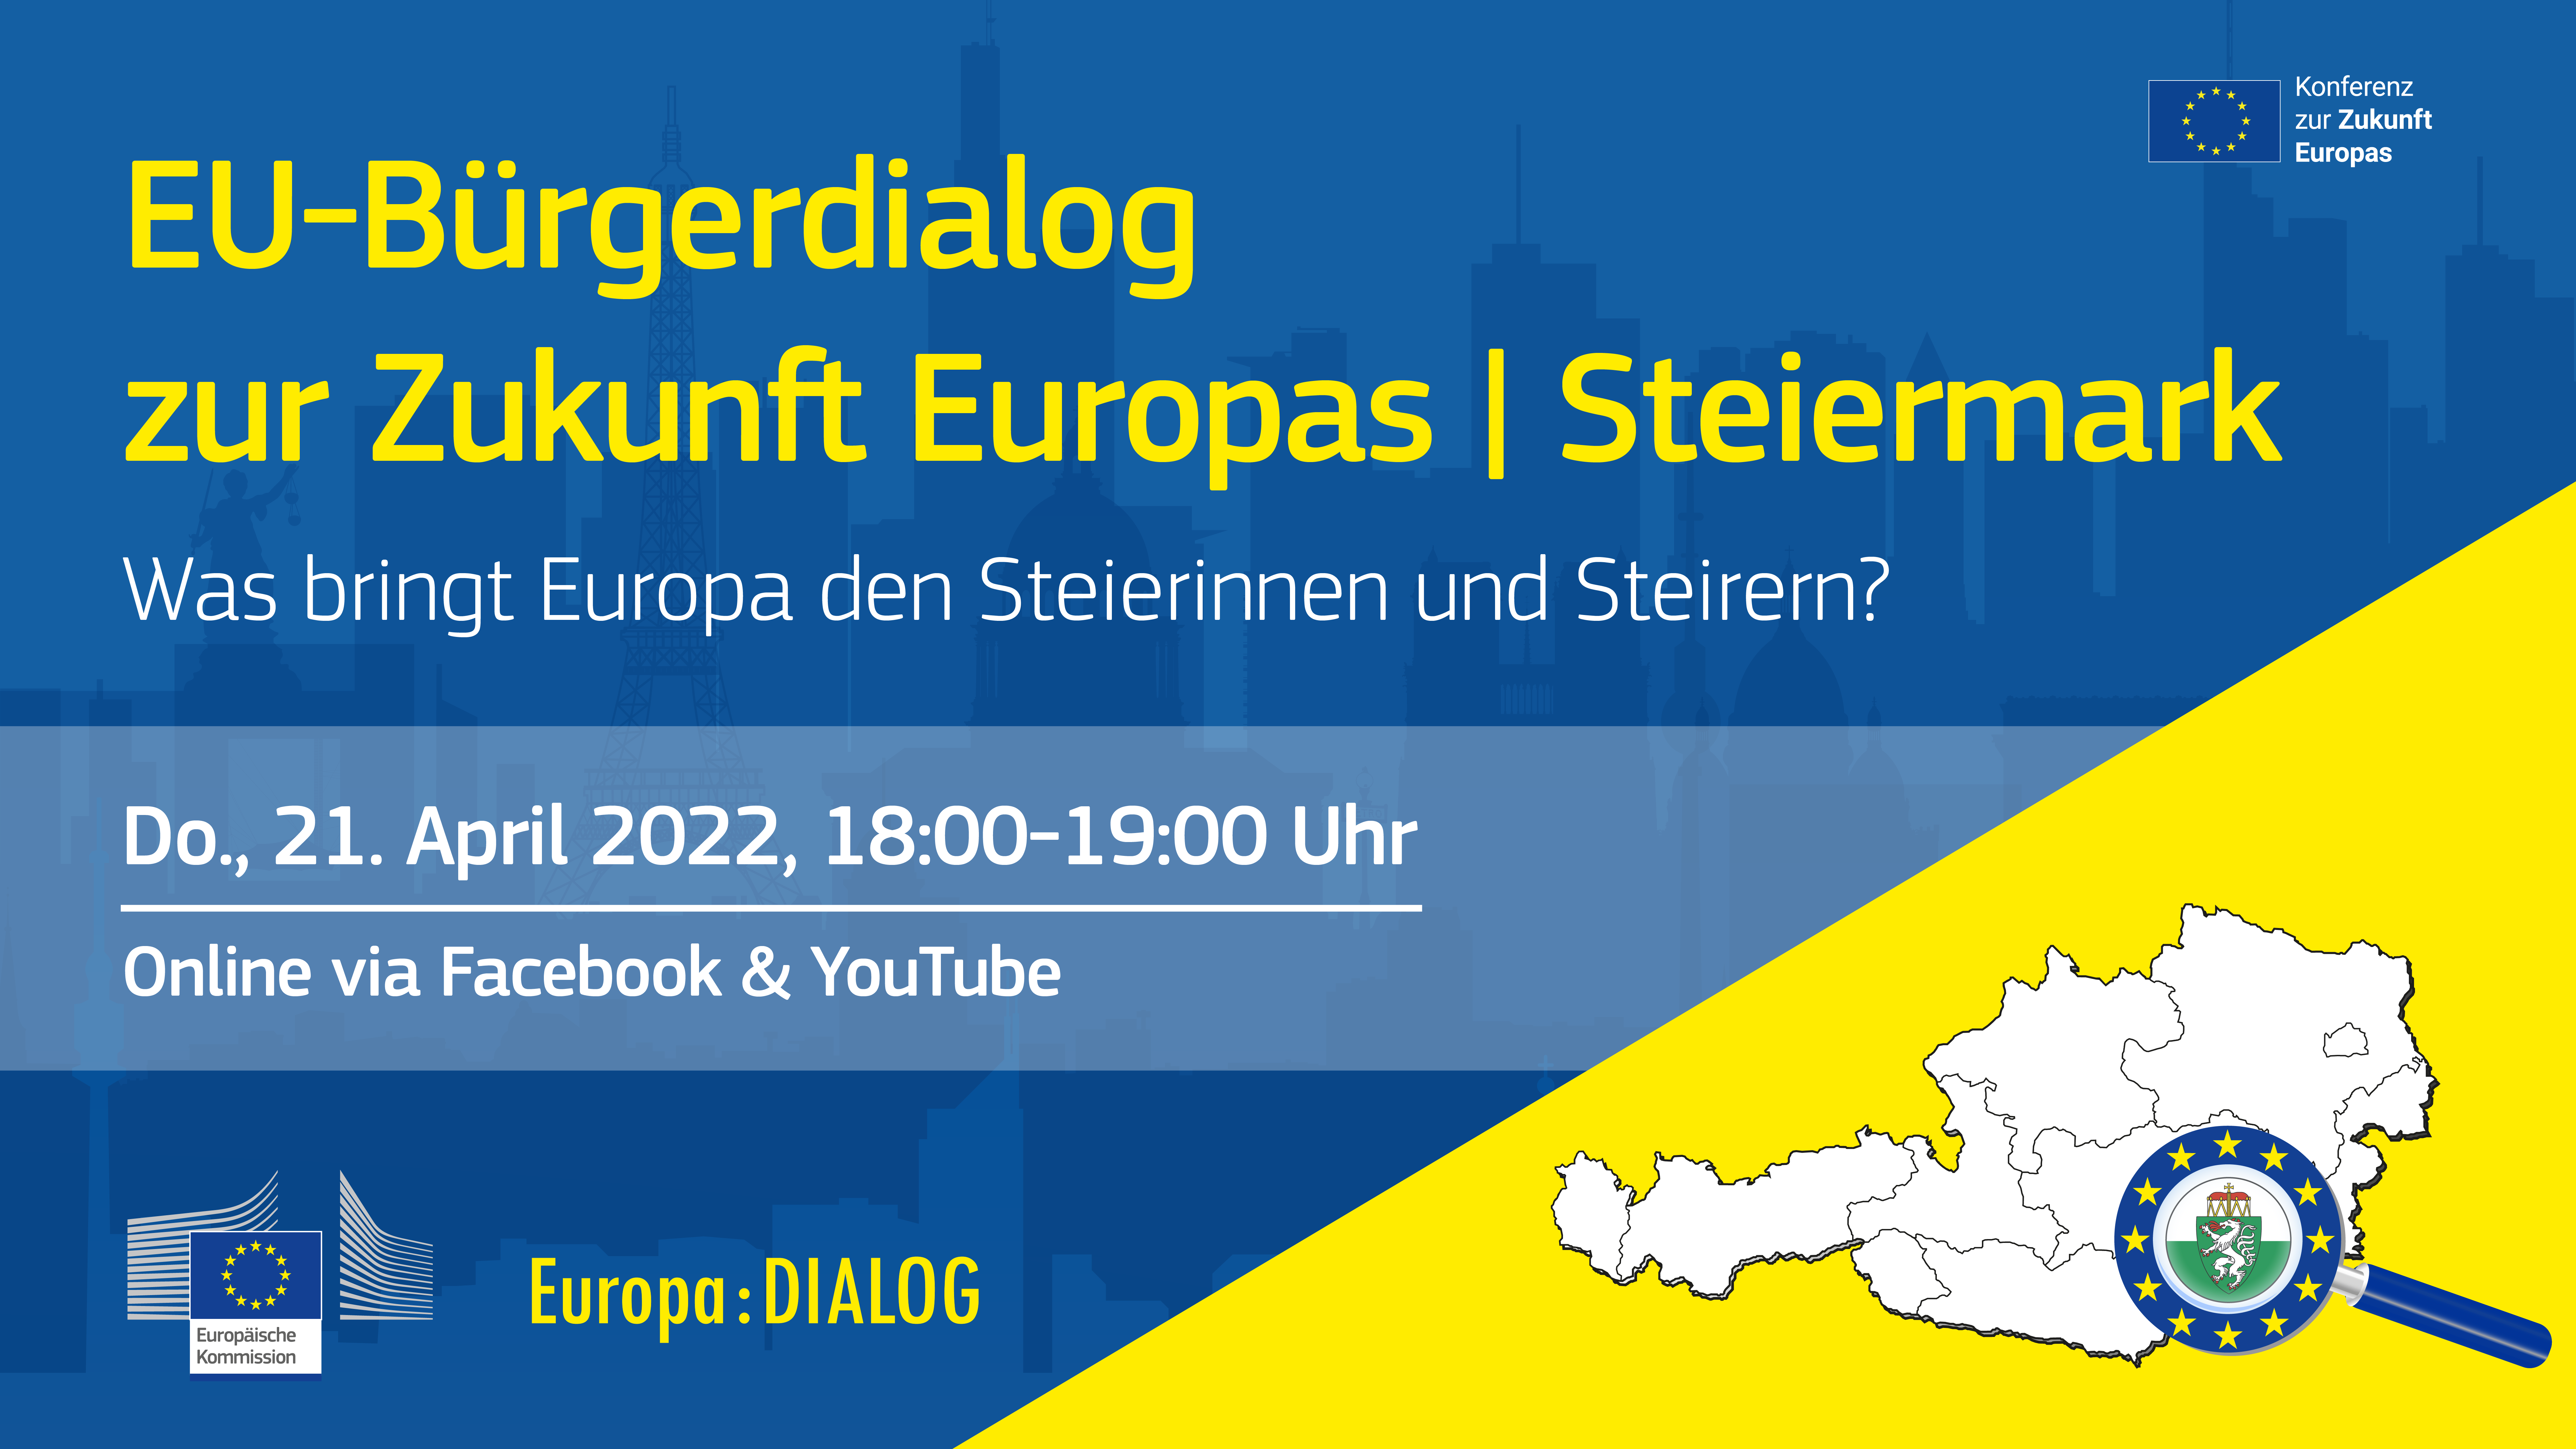 Europa : DIALOG | EU-Bürgerdialog zur Zukunft Europas | Steiermark